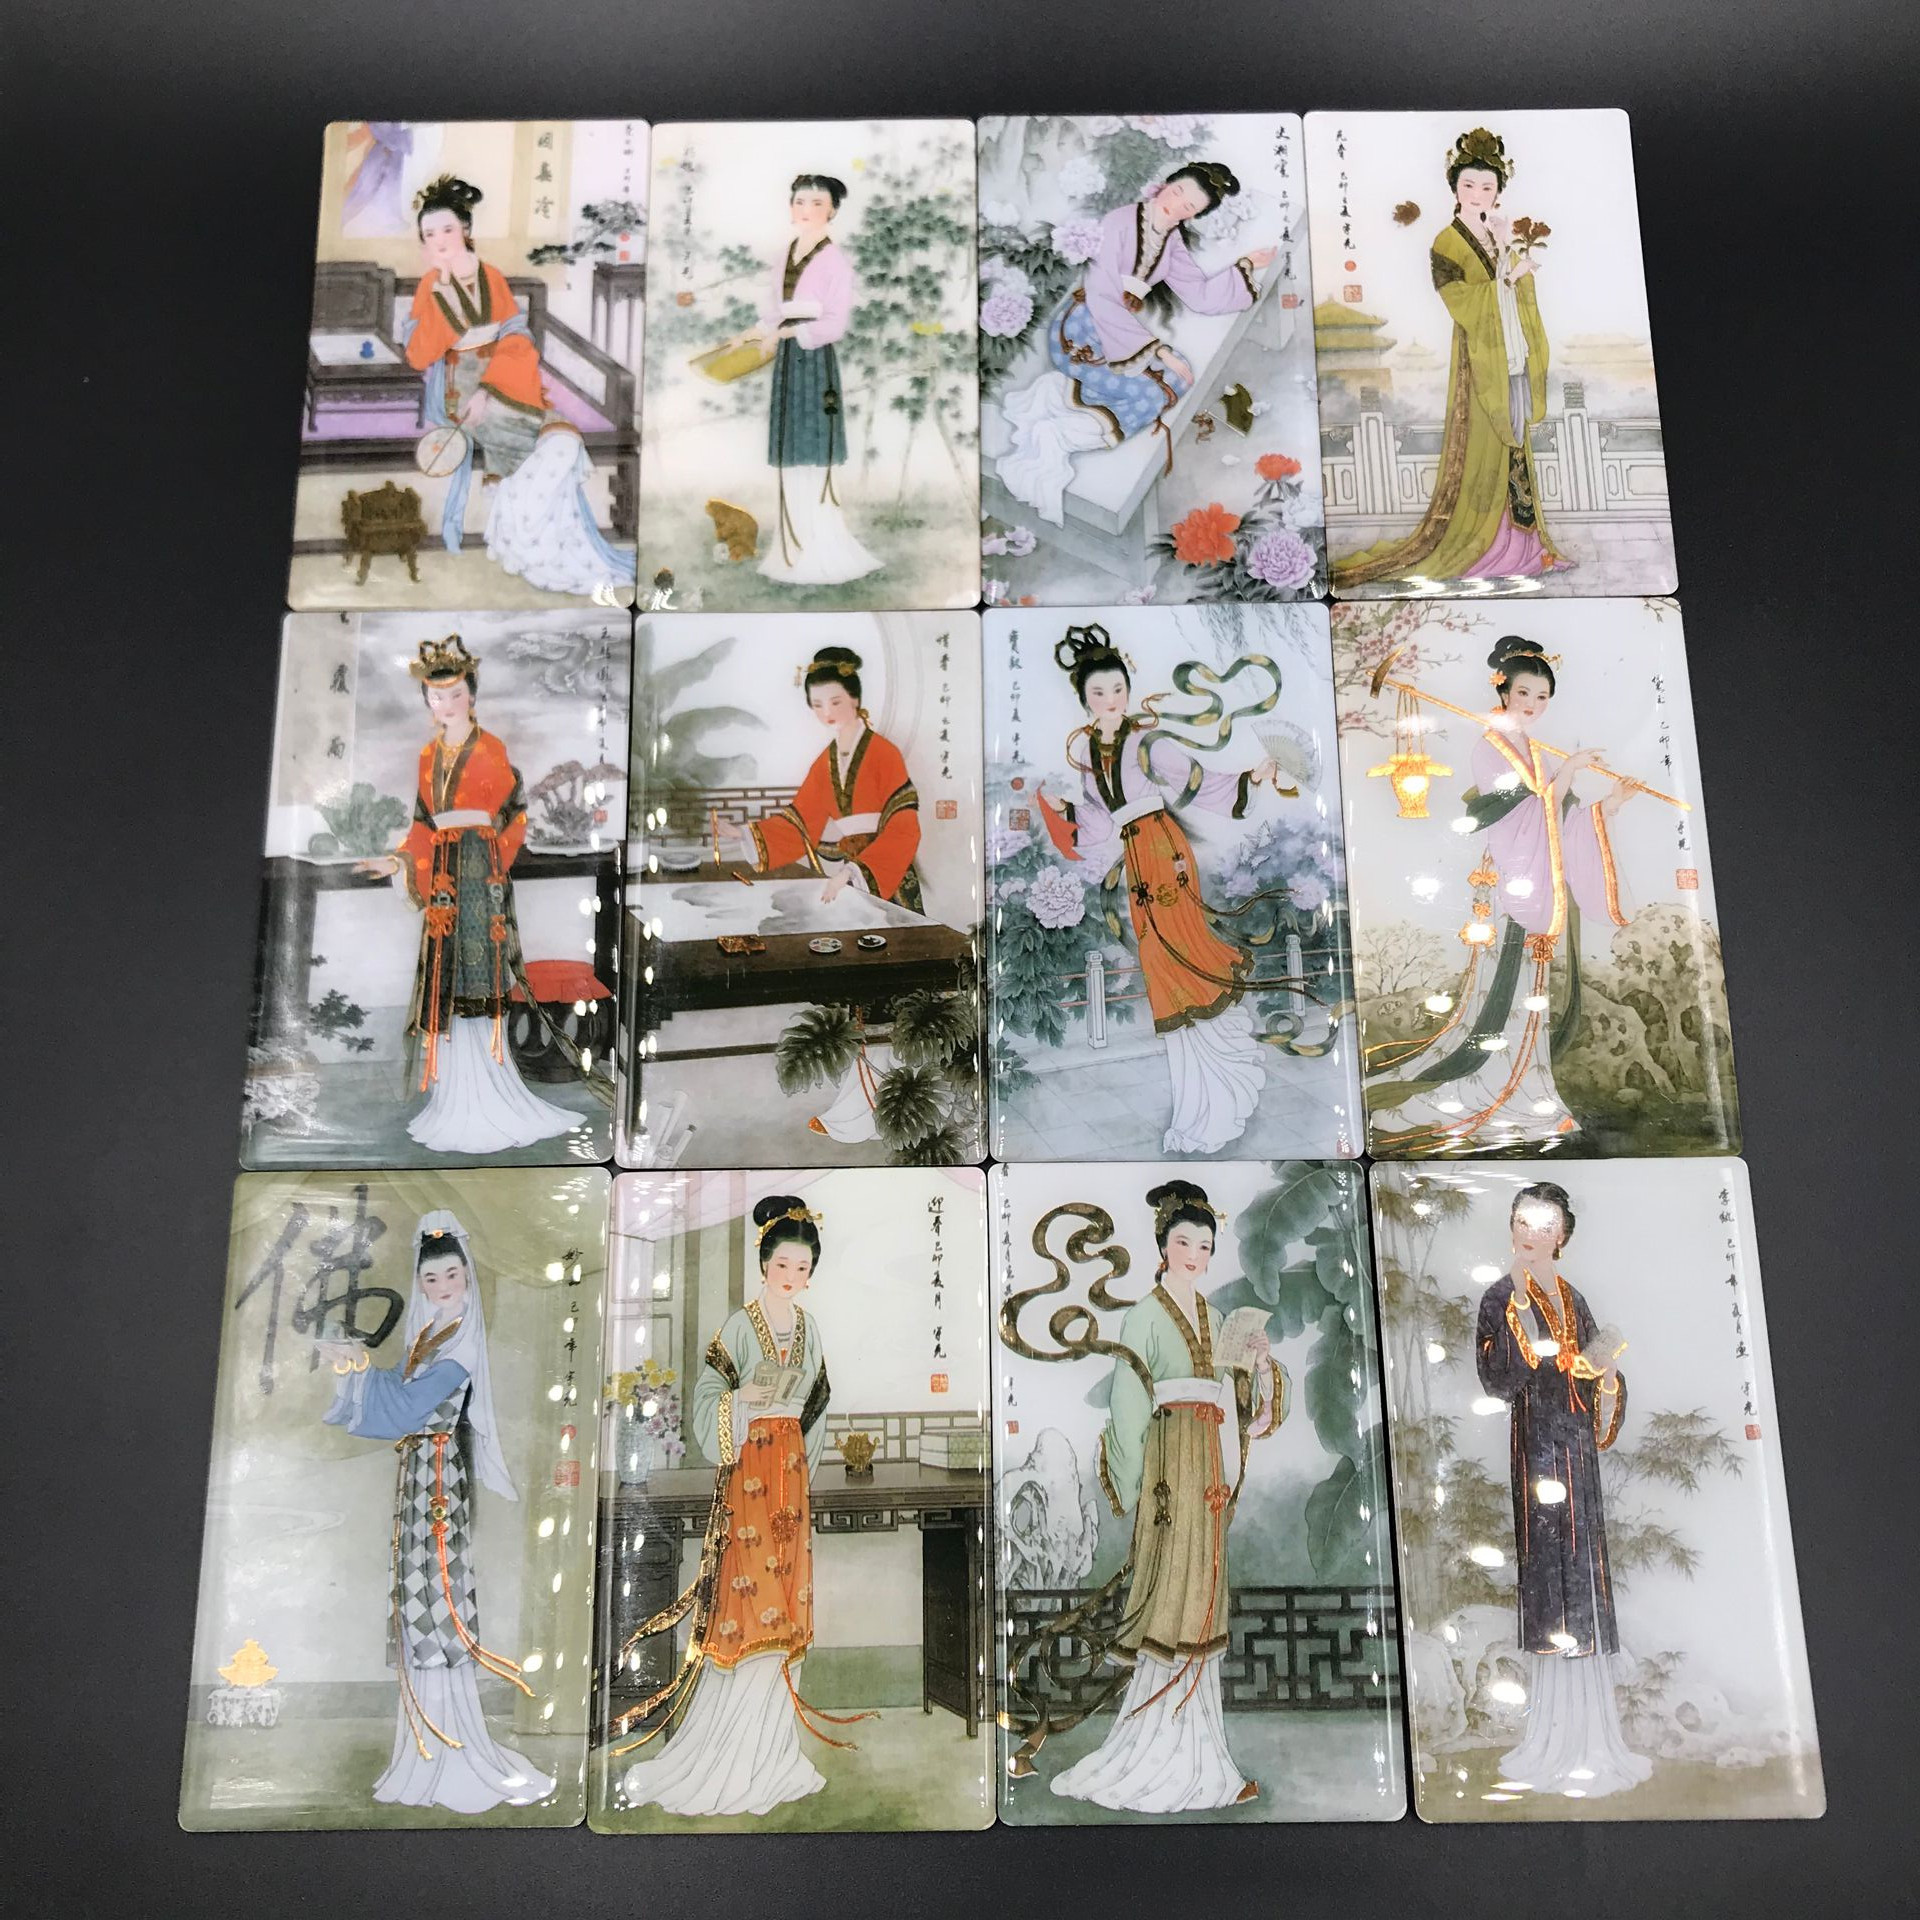 中国十二金钗美女风景高档冰箱磁贴创意礼品refrigerator magnets